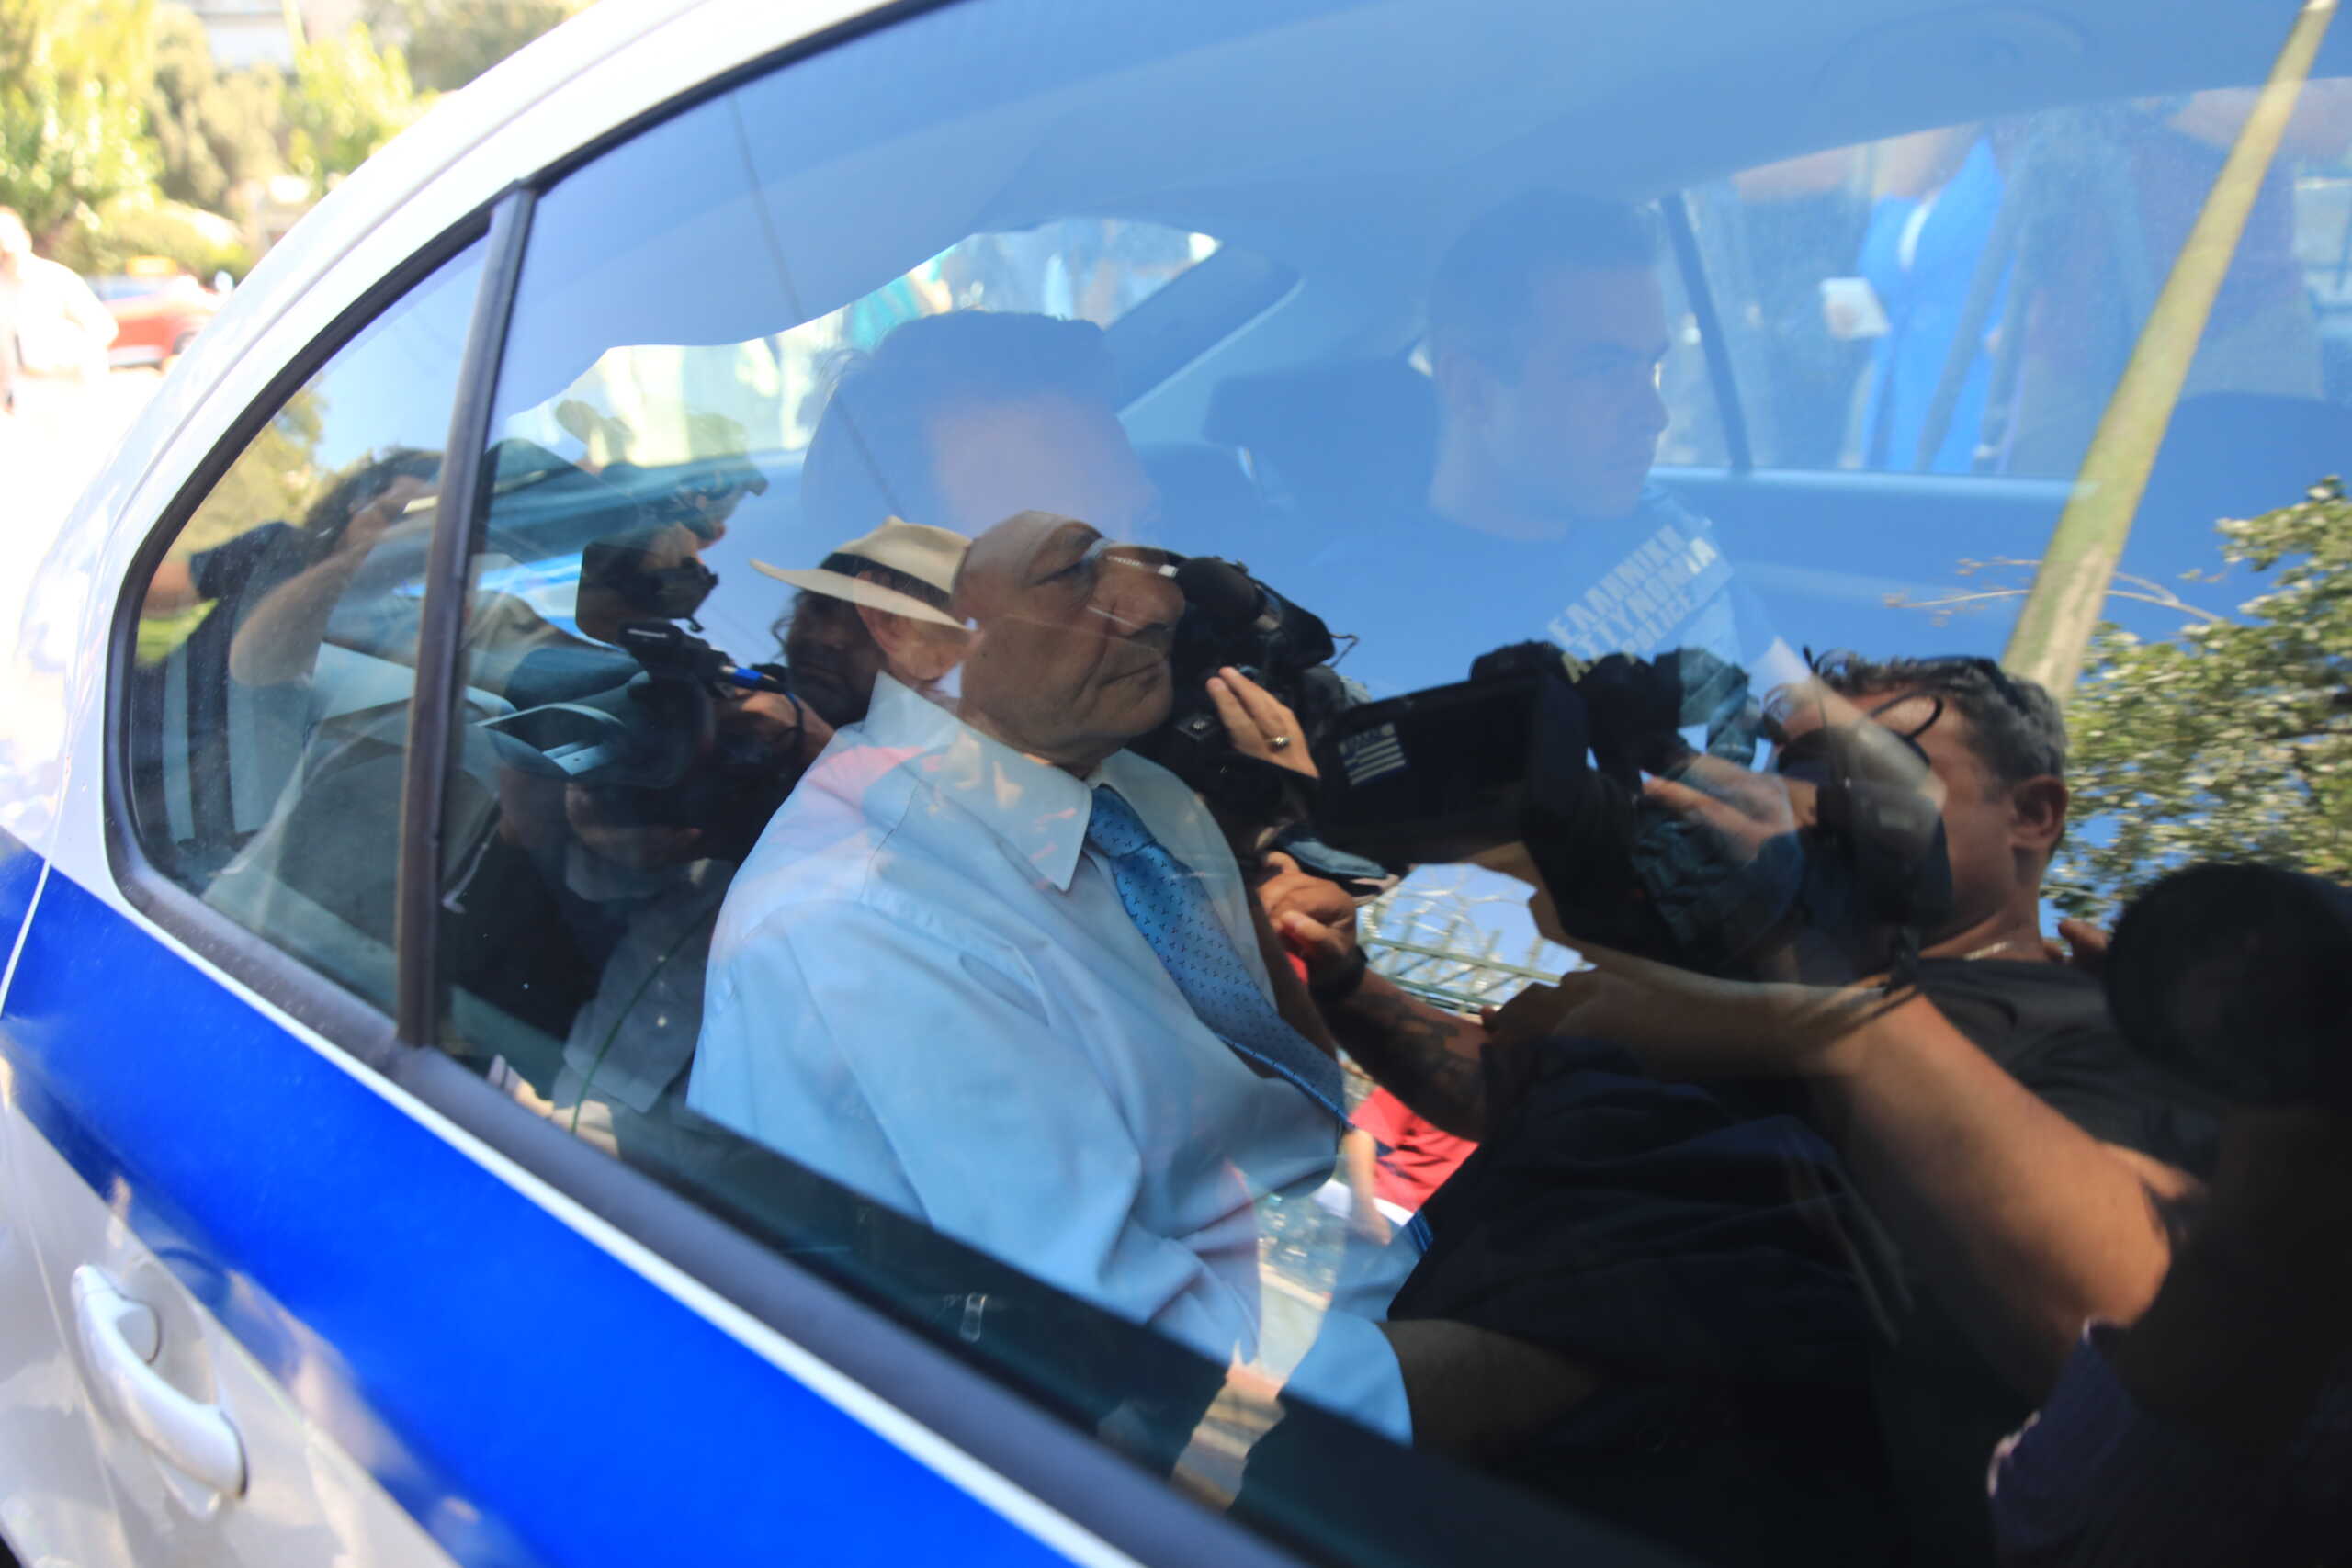 Απόστολος Λύτρας: Από τις μεγάλες ποινικές υποθέσεις στον Κορυδαλλό – Το VIP κελί, οι συγκρατούμενοι και το πρώτο επισκεπτήριο